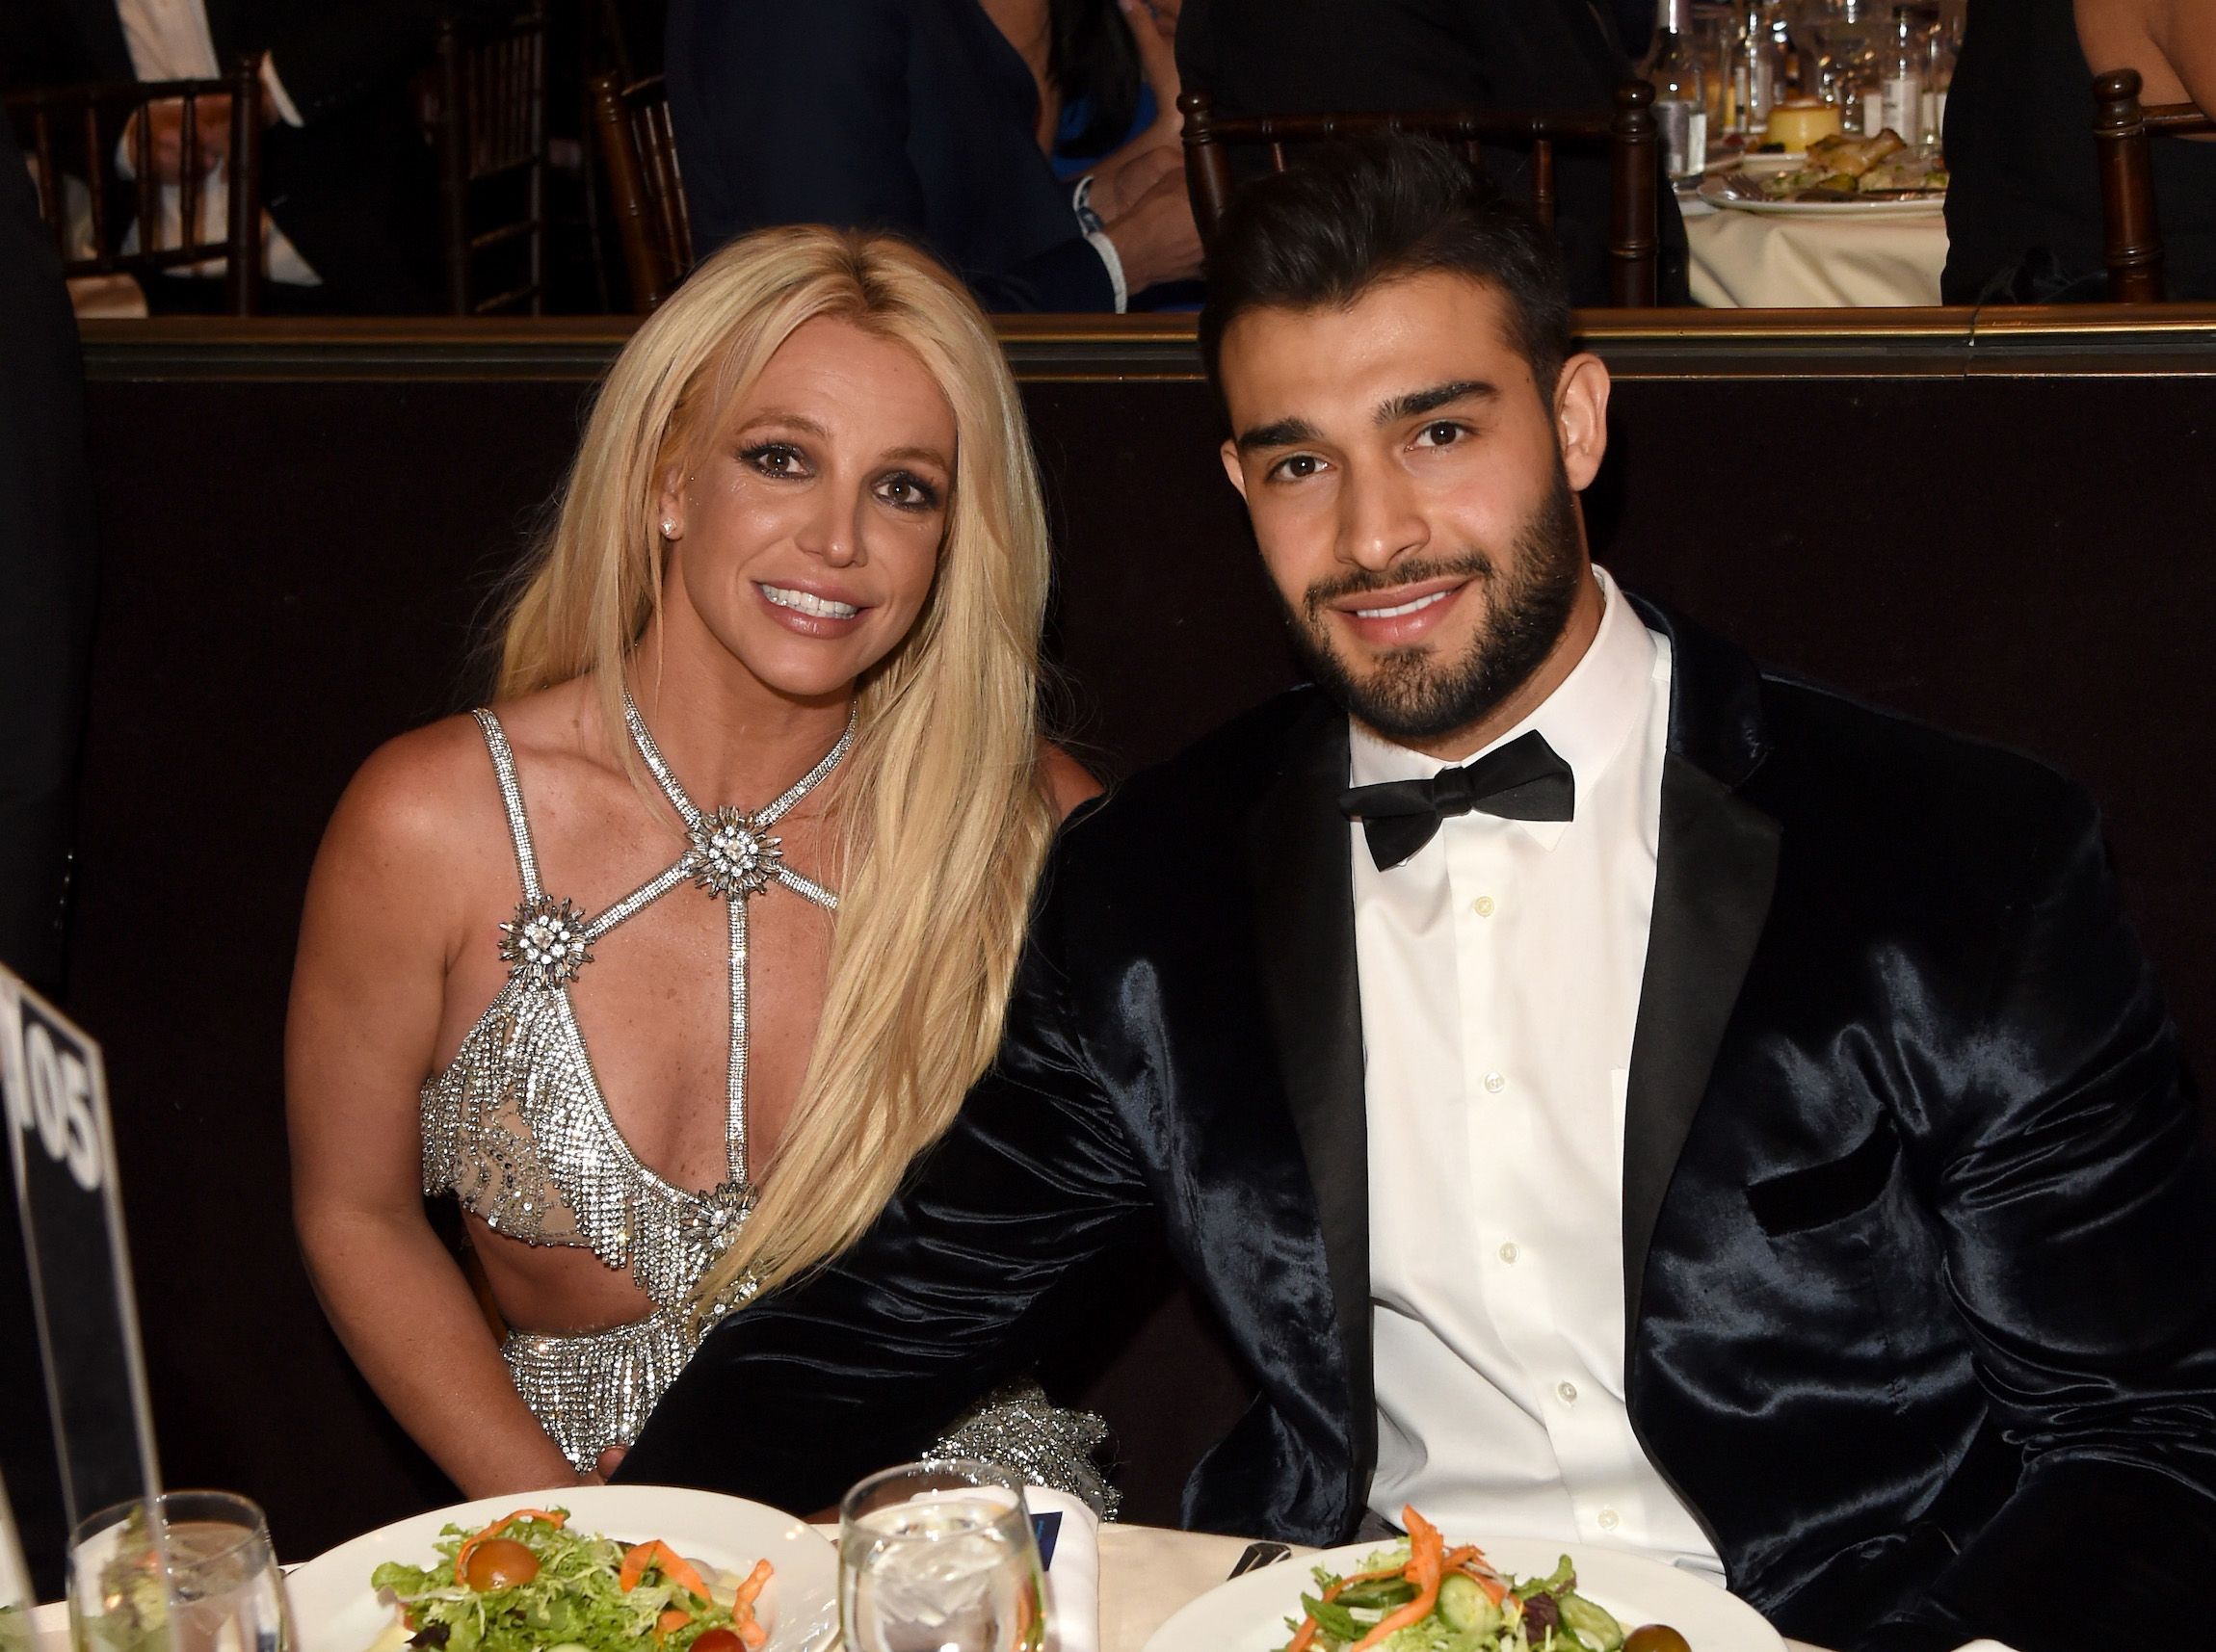 Britney Spears and her husband Sam Asghari